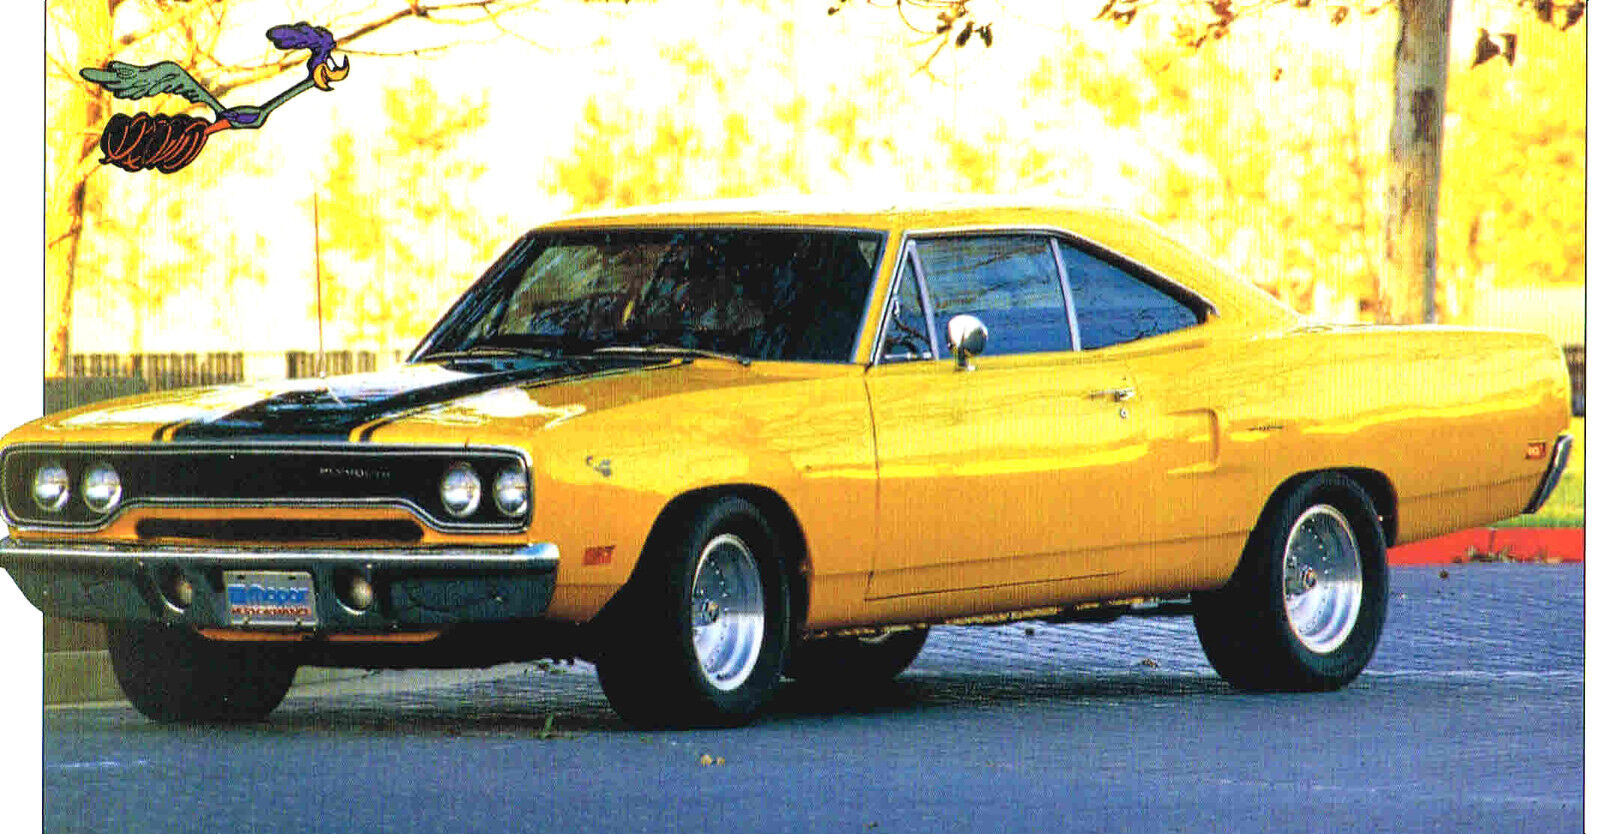 1970 PLYMOUTH ROAD RUNNER 440 SPEC SHEET/Brochure:MOPAR